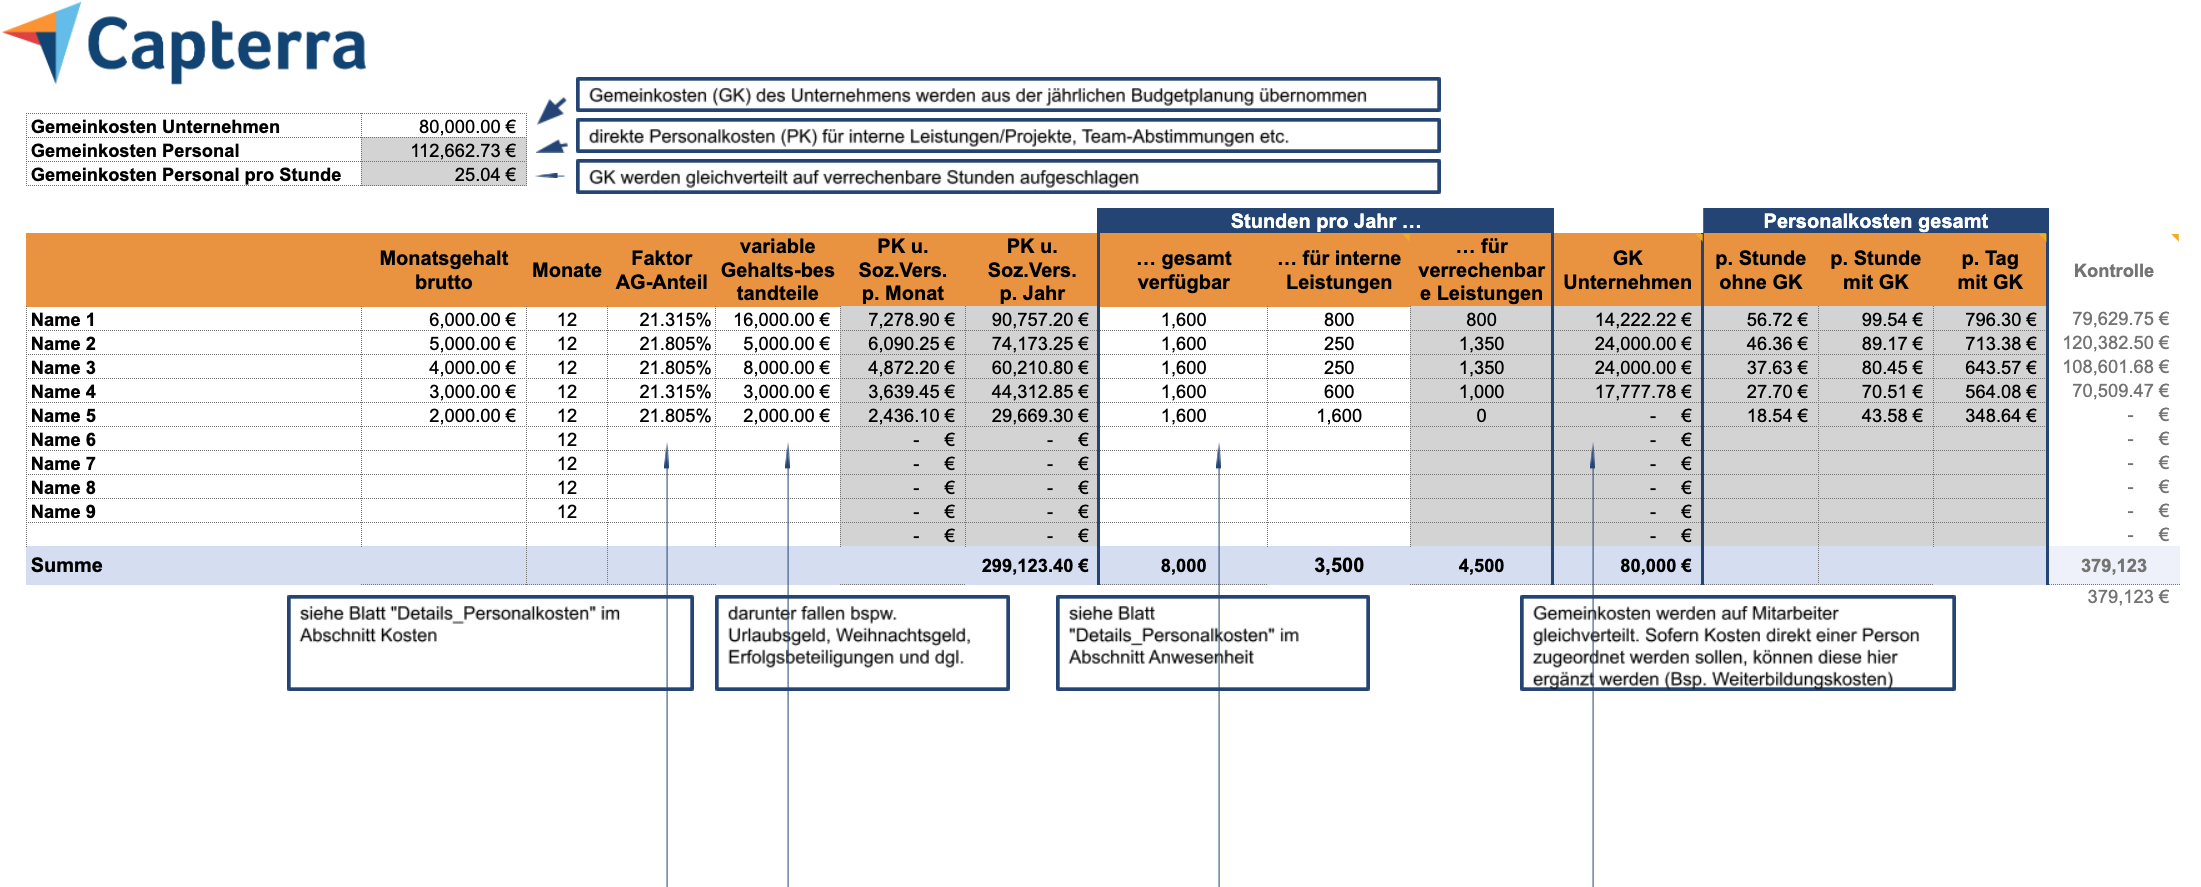 Personalkostenrechner: Personalkosten berechnen mit dieser Excel-Vorlage